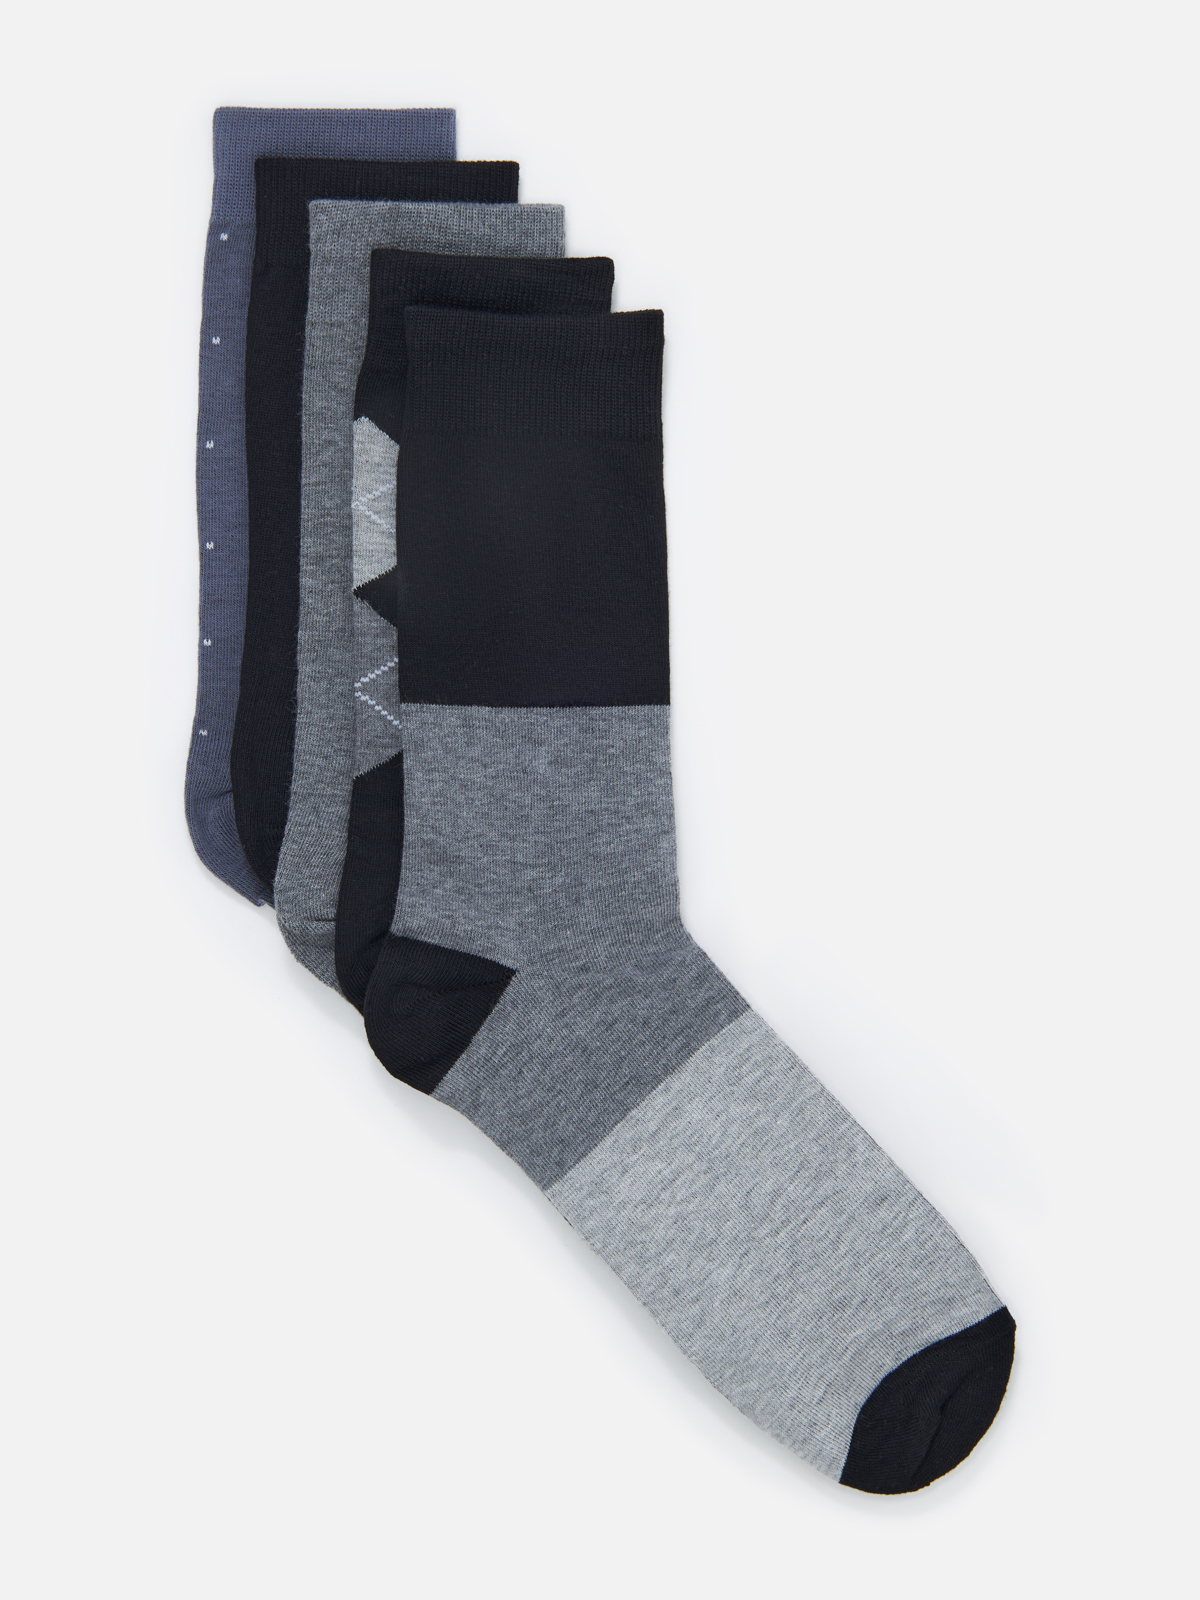 Комплект носков мужских Cotton & Quality 53001Т5 разноцветных 43-46